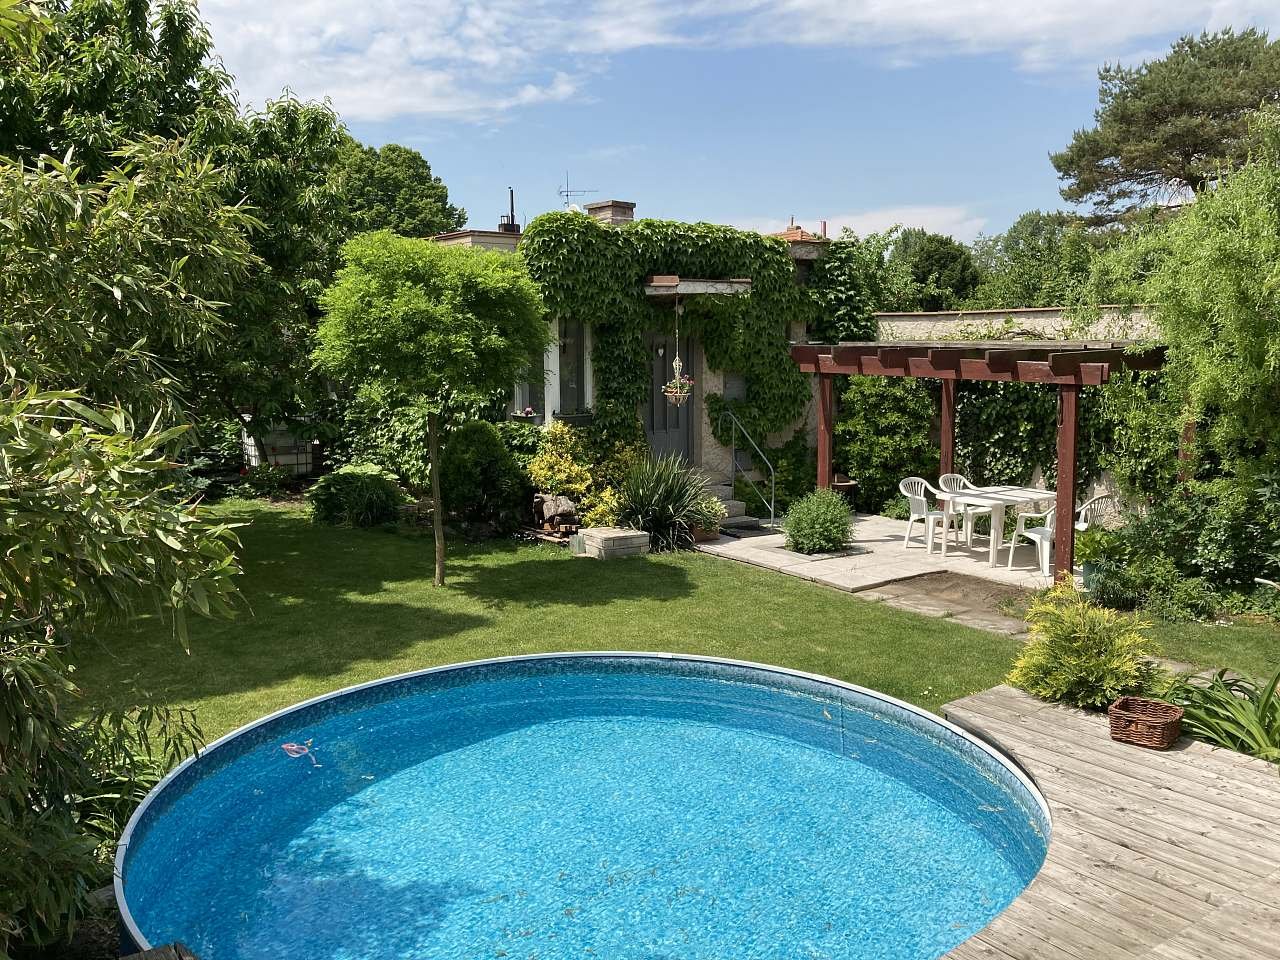 Μια μικρή πισίνα στον κήπο με ένα διαμέρισμα και μια ανοιχτή πέργκολα